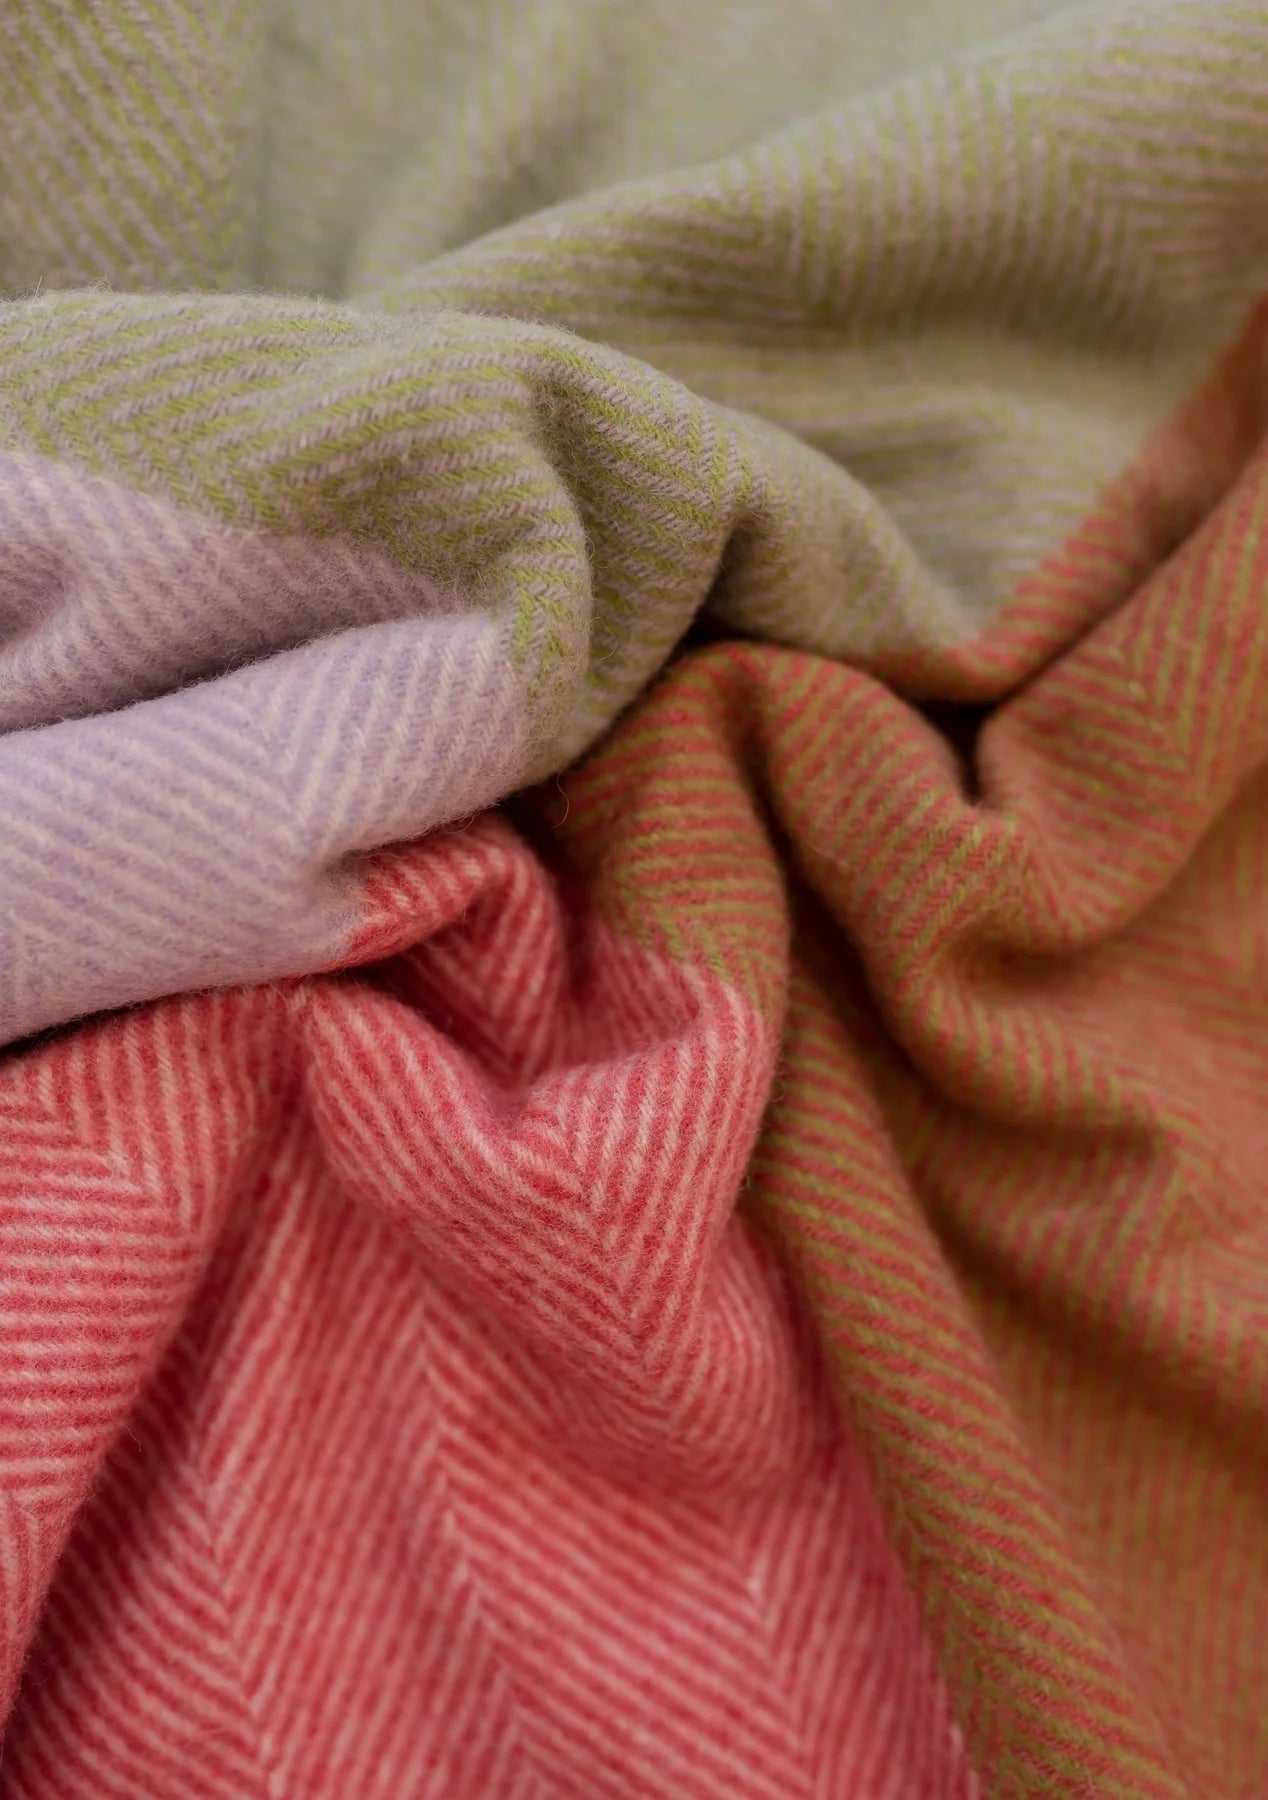 Recycled Wool Blanket . Pink Herringbone Offset Check